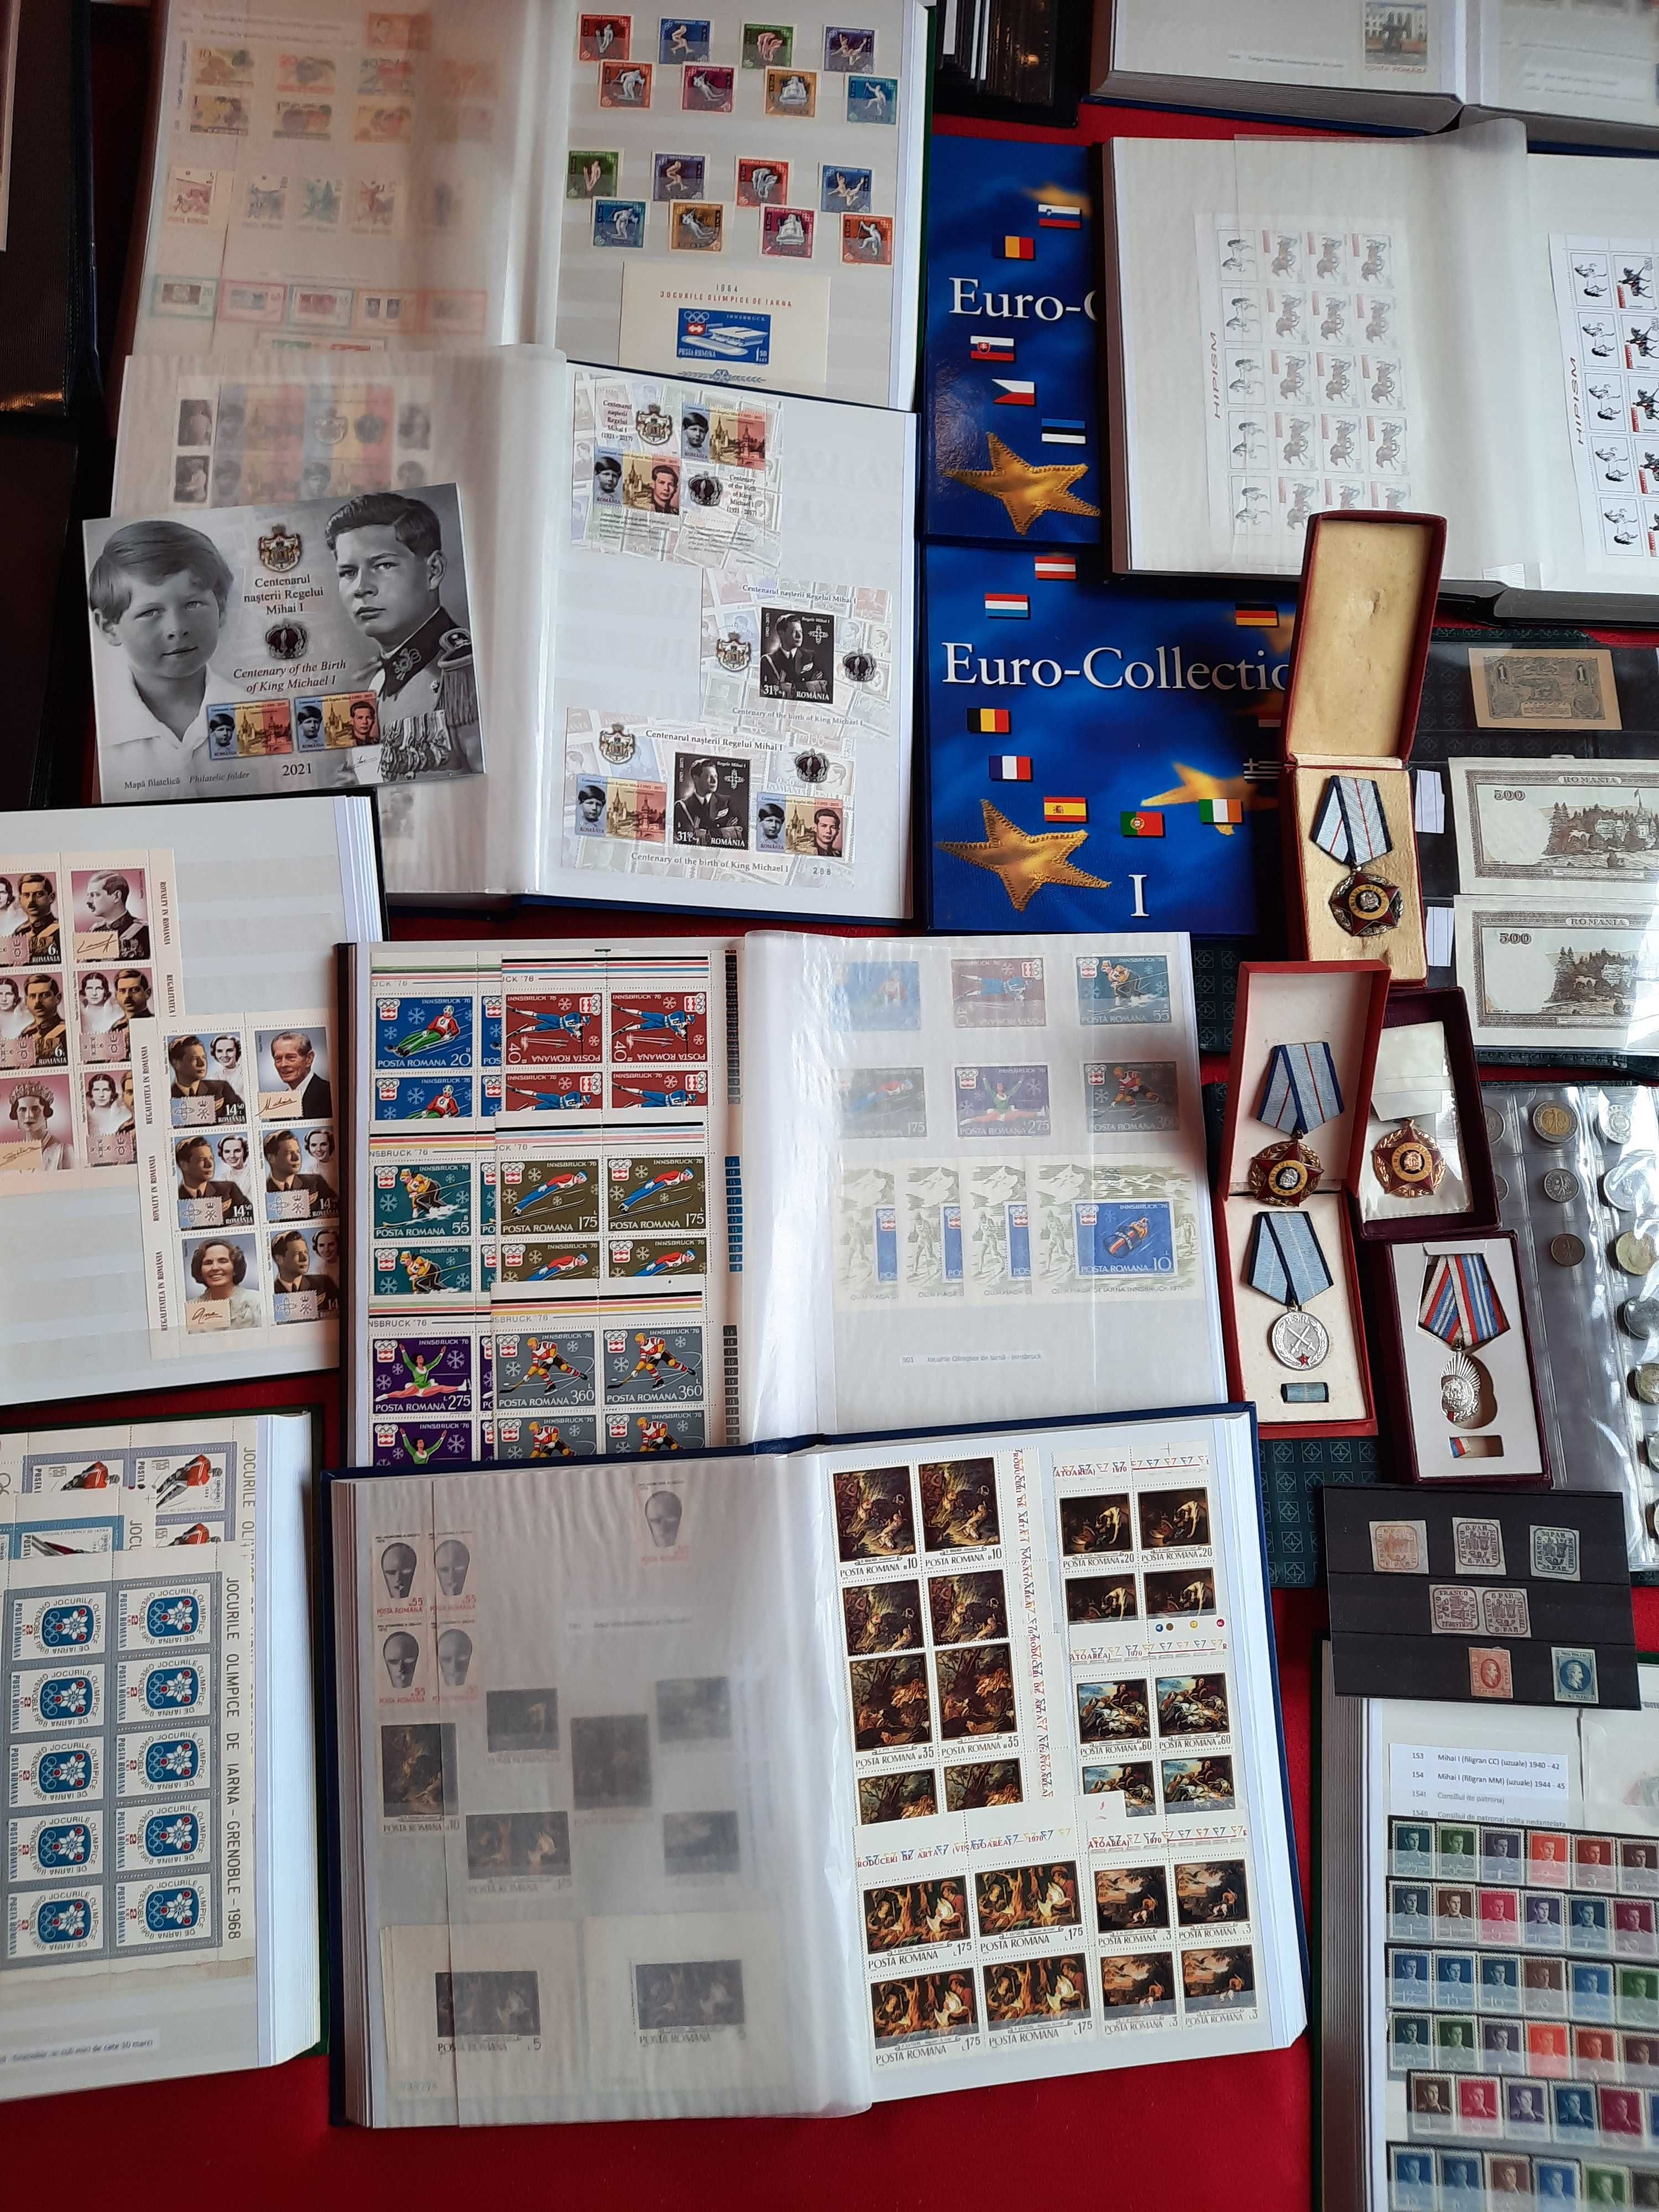 Colectie timbre, FDC-uri, monede, bancnote